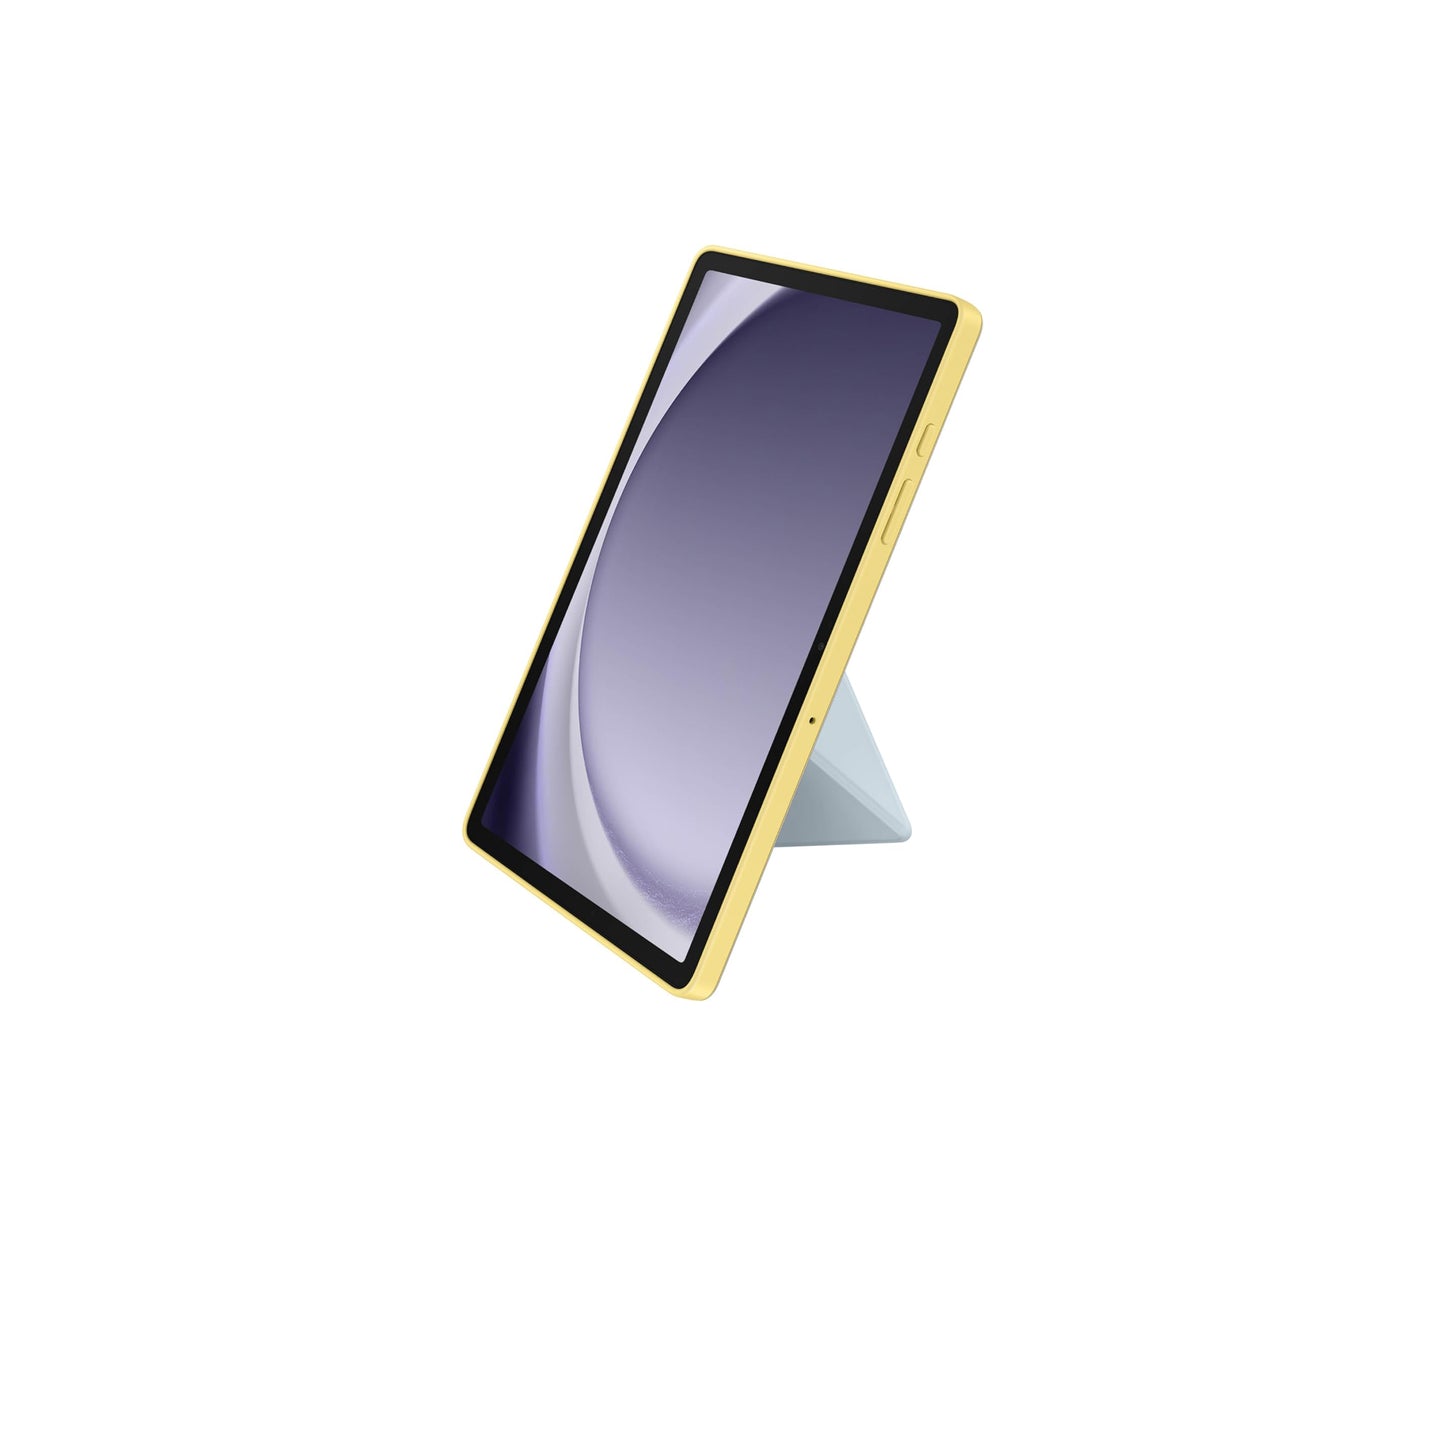 غطاء كتاب SAMSUNG Galaxy Tab A9+، حافظة حماية للكمبيوتر اللوحي، حامل قابل للطي مع أوضاع أفقية وصورة، حماية ضد الصدمات والخدوش، تشغيل/إيقاف الشاشة تلقائيًا، إصدار الولايات المتحدة، أزرق 